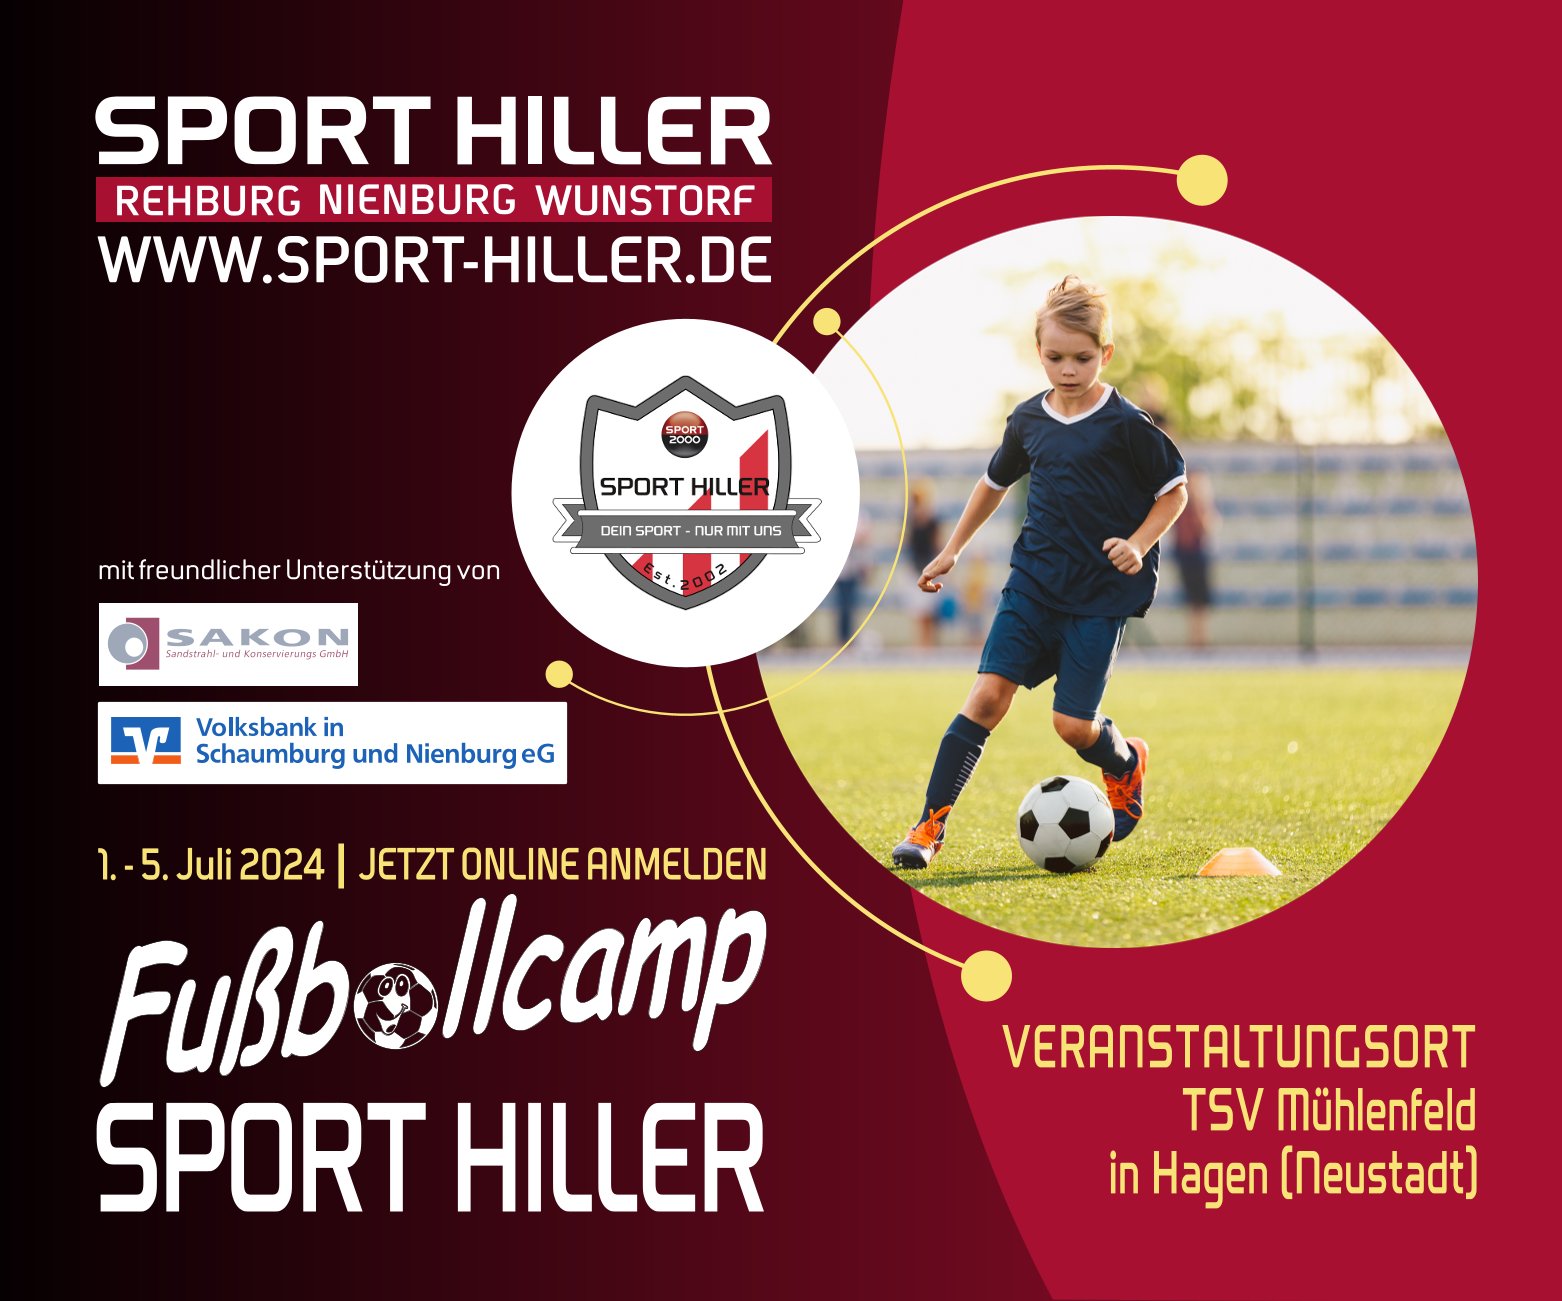 Sport Hiller Sportfachgeschäft in Nienburg Rehburg Wunstorf